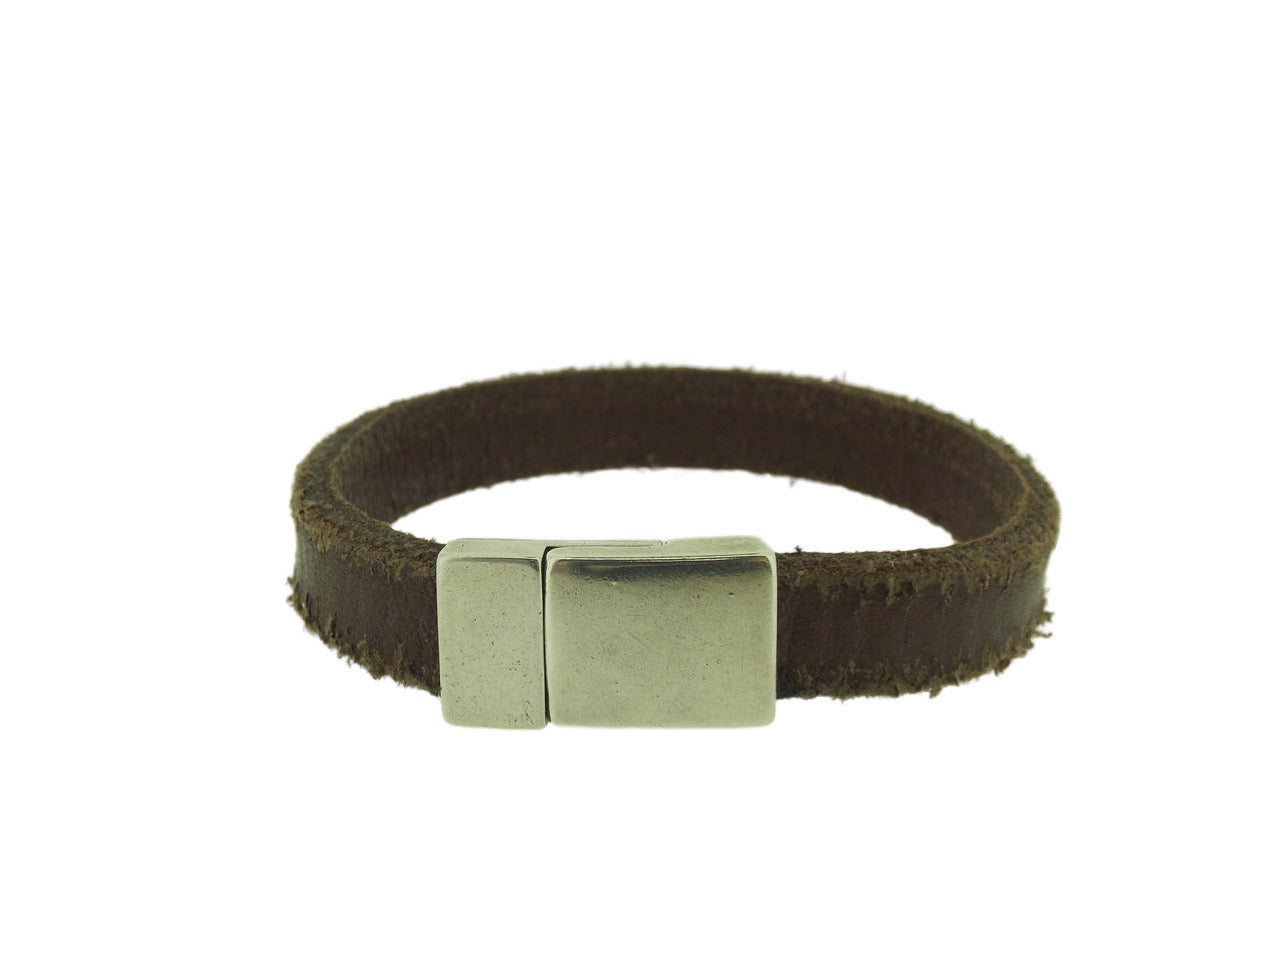 Vintage Leather Bracelet